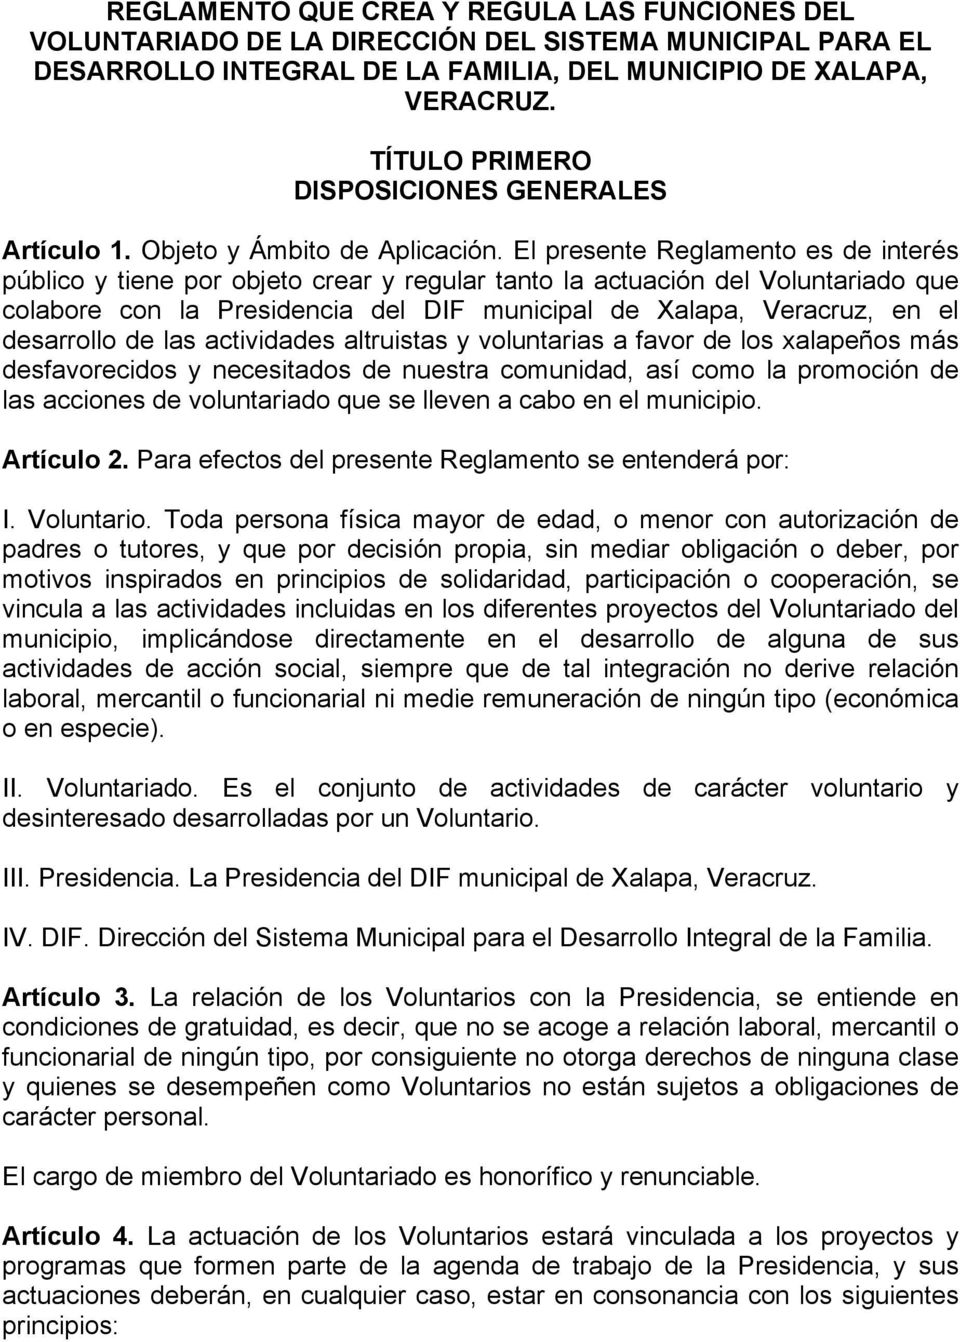 El presente Reglamento es de interés público y tiene por objeto crear y regular tanto la actuación del Voluntariado que colabore con la Presidencia del DIF municipal de Xalapa, Veracruz, en el